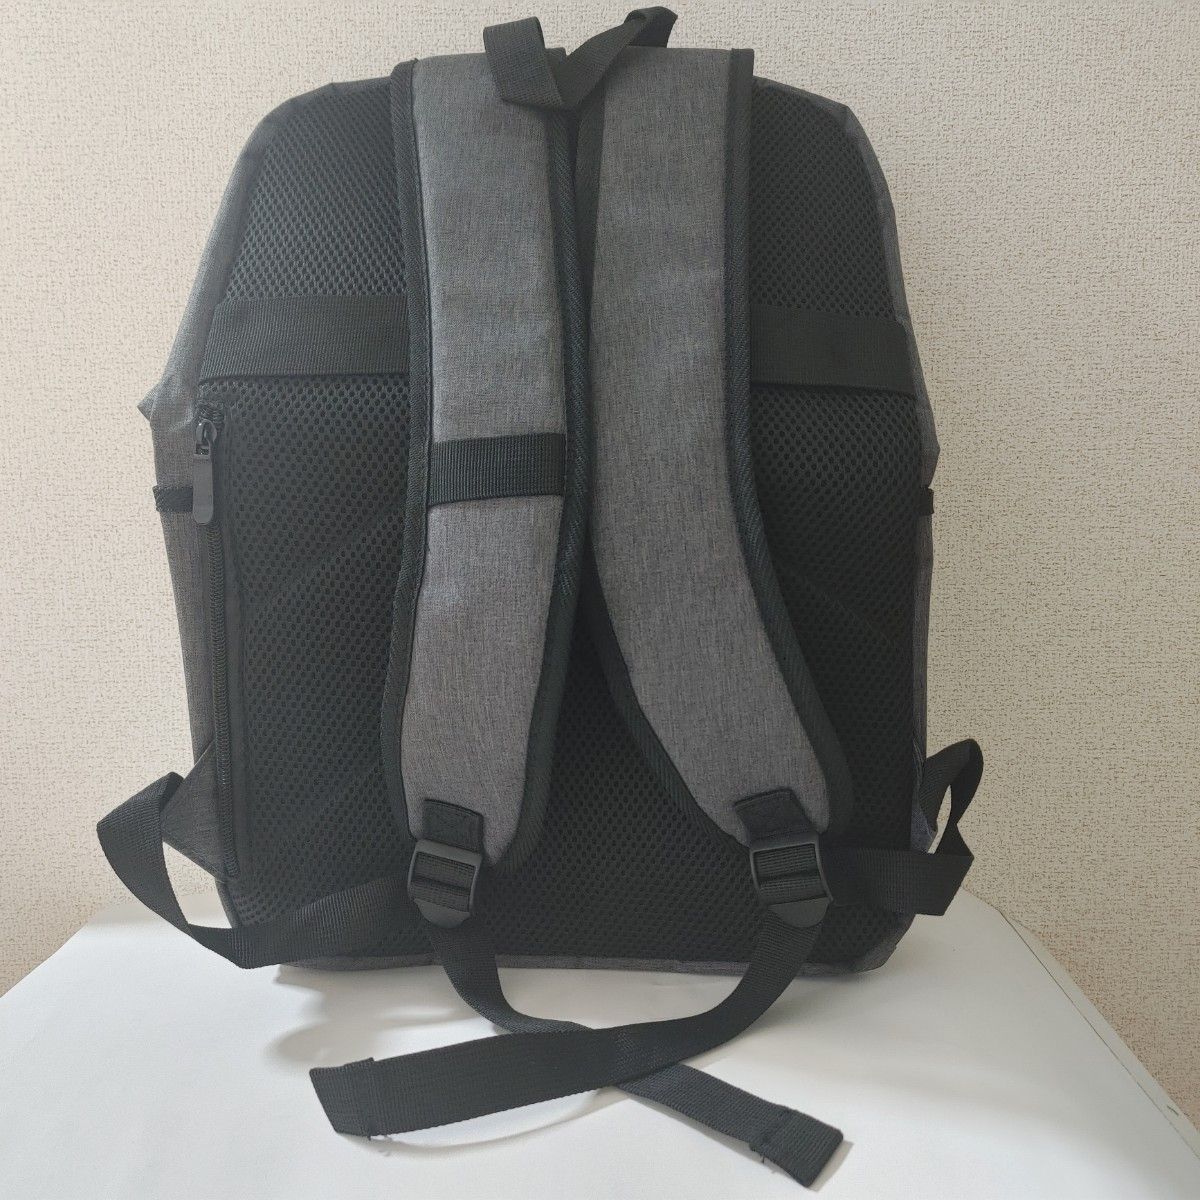 【メンズバッグ】RONDE デイパック リュック バックパック デイリー 鞄 大容量 ロンデ お出かけ 軽量 通勤 通学